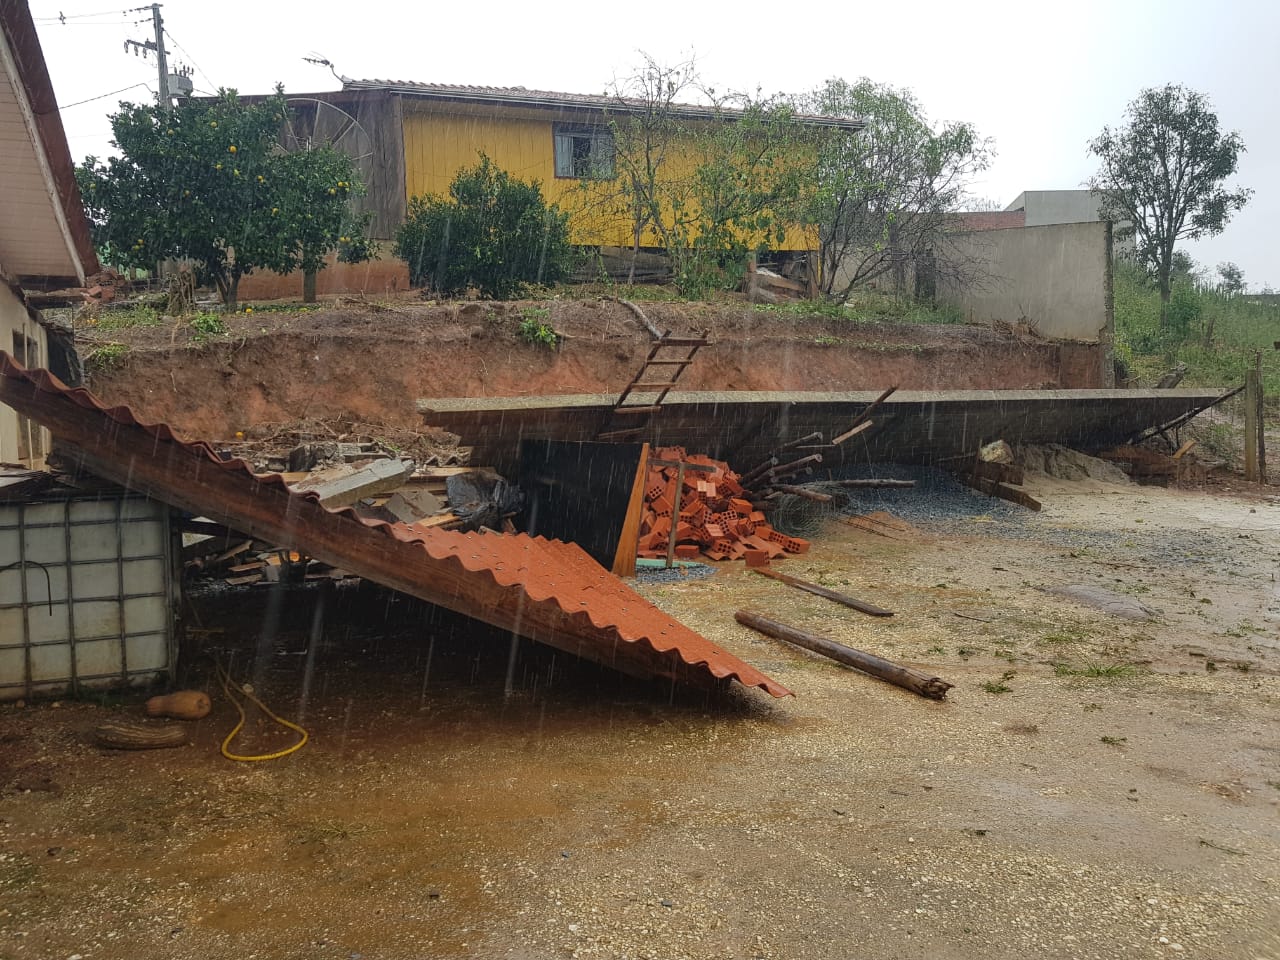  Rio Branco do Sul deve decretar estado de emergência por causa de estragos com temporal